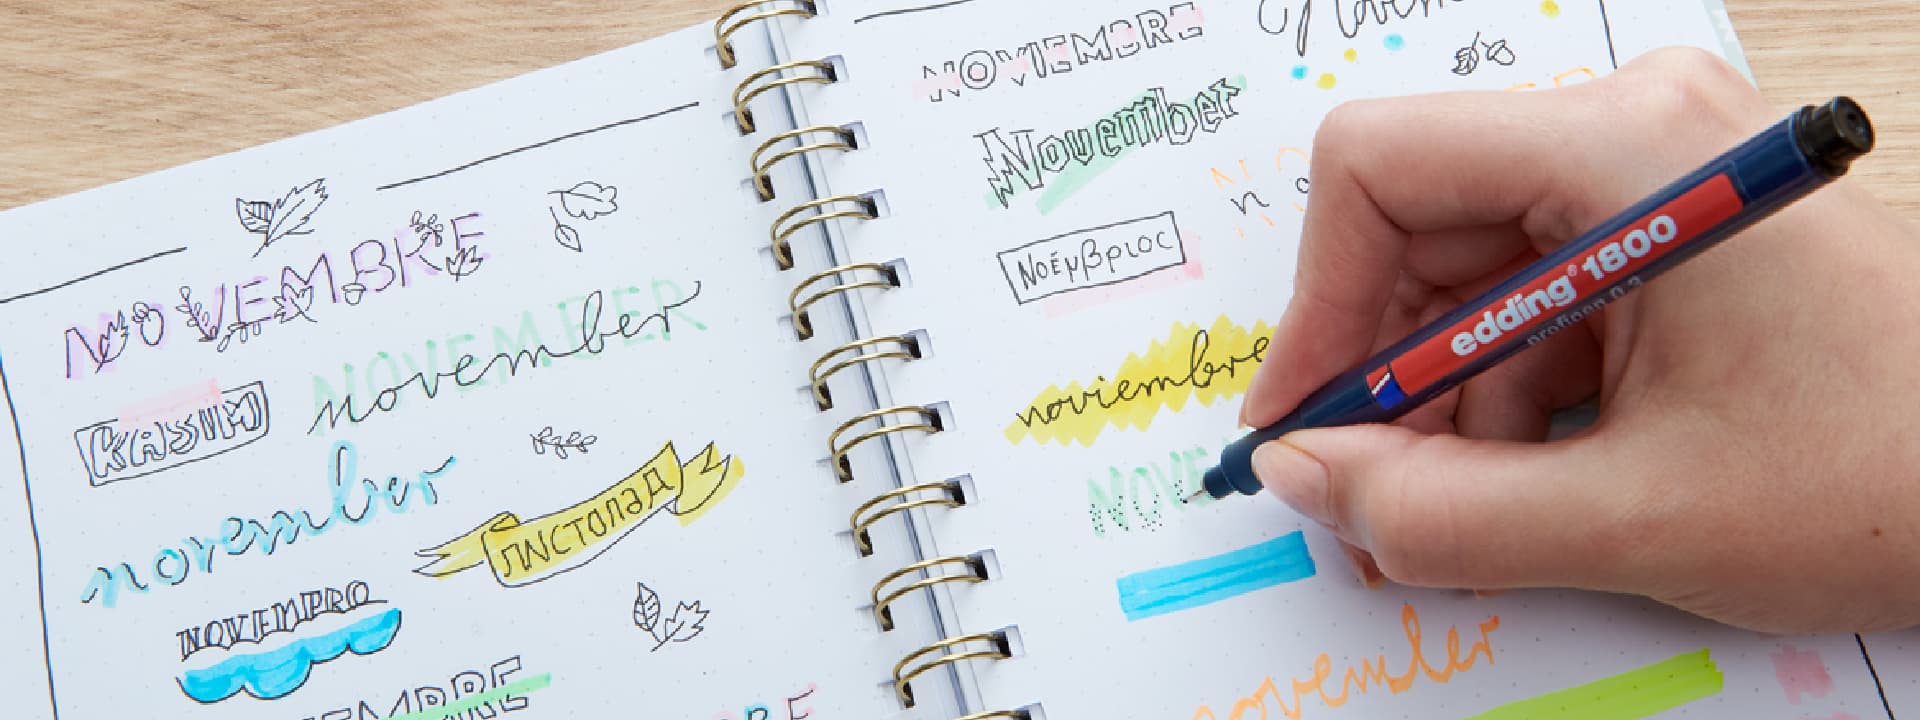 Eine Person übt Kalligrafie und Schriftstile mit verschiedenen Farben in einem Notizbuch, wobei das Wort „November“ in verschiedenen Schriftarten und Designs prominent hervorgehoben ist.